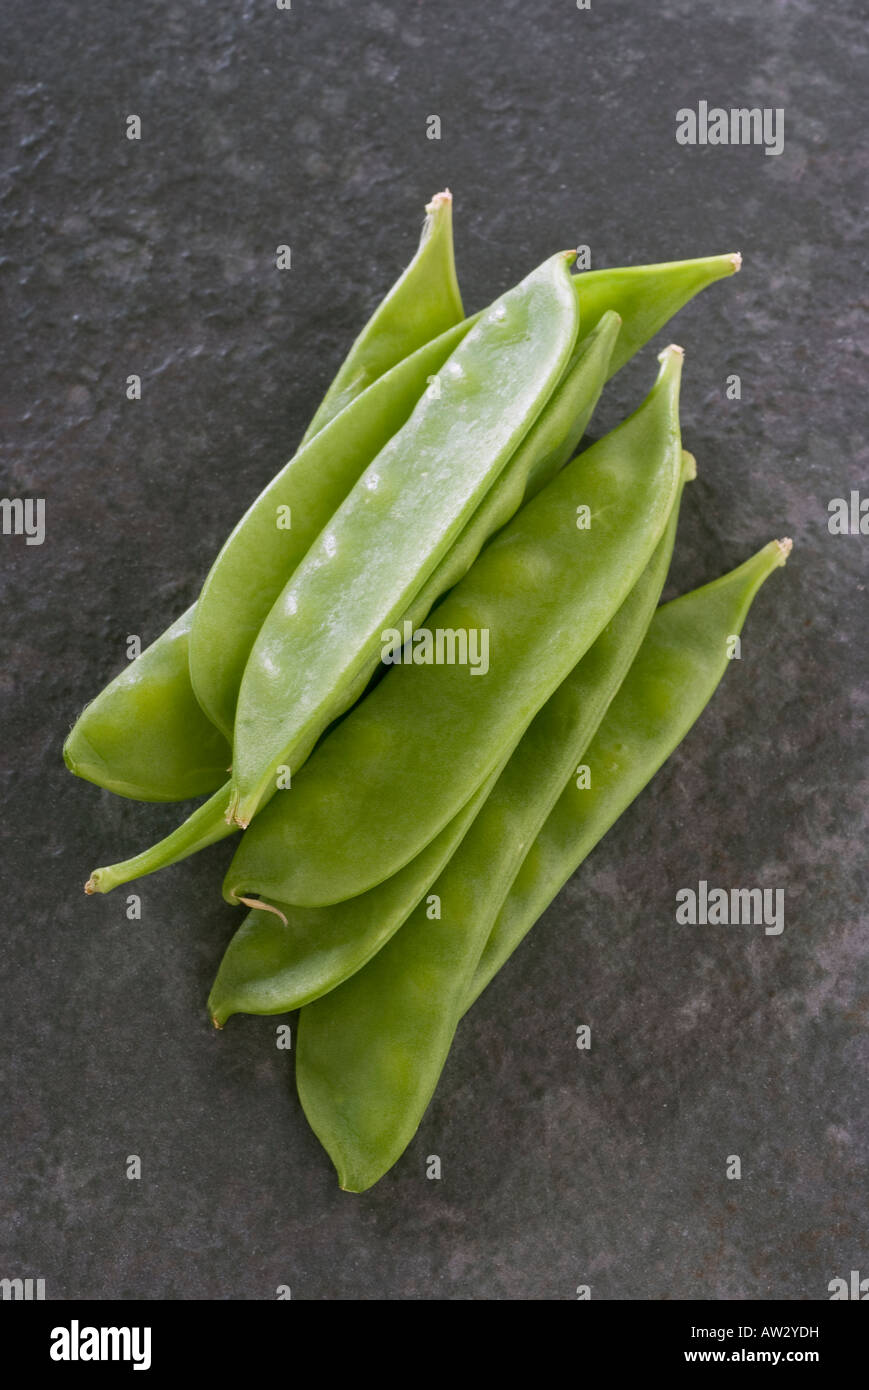 Fresh snow pea pods, also known as mange tout. Stock Photo